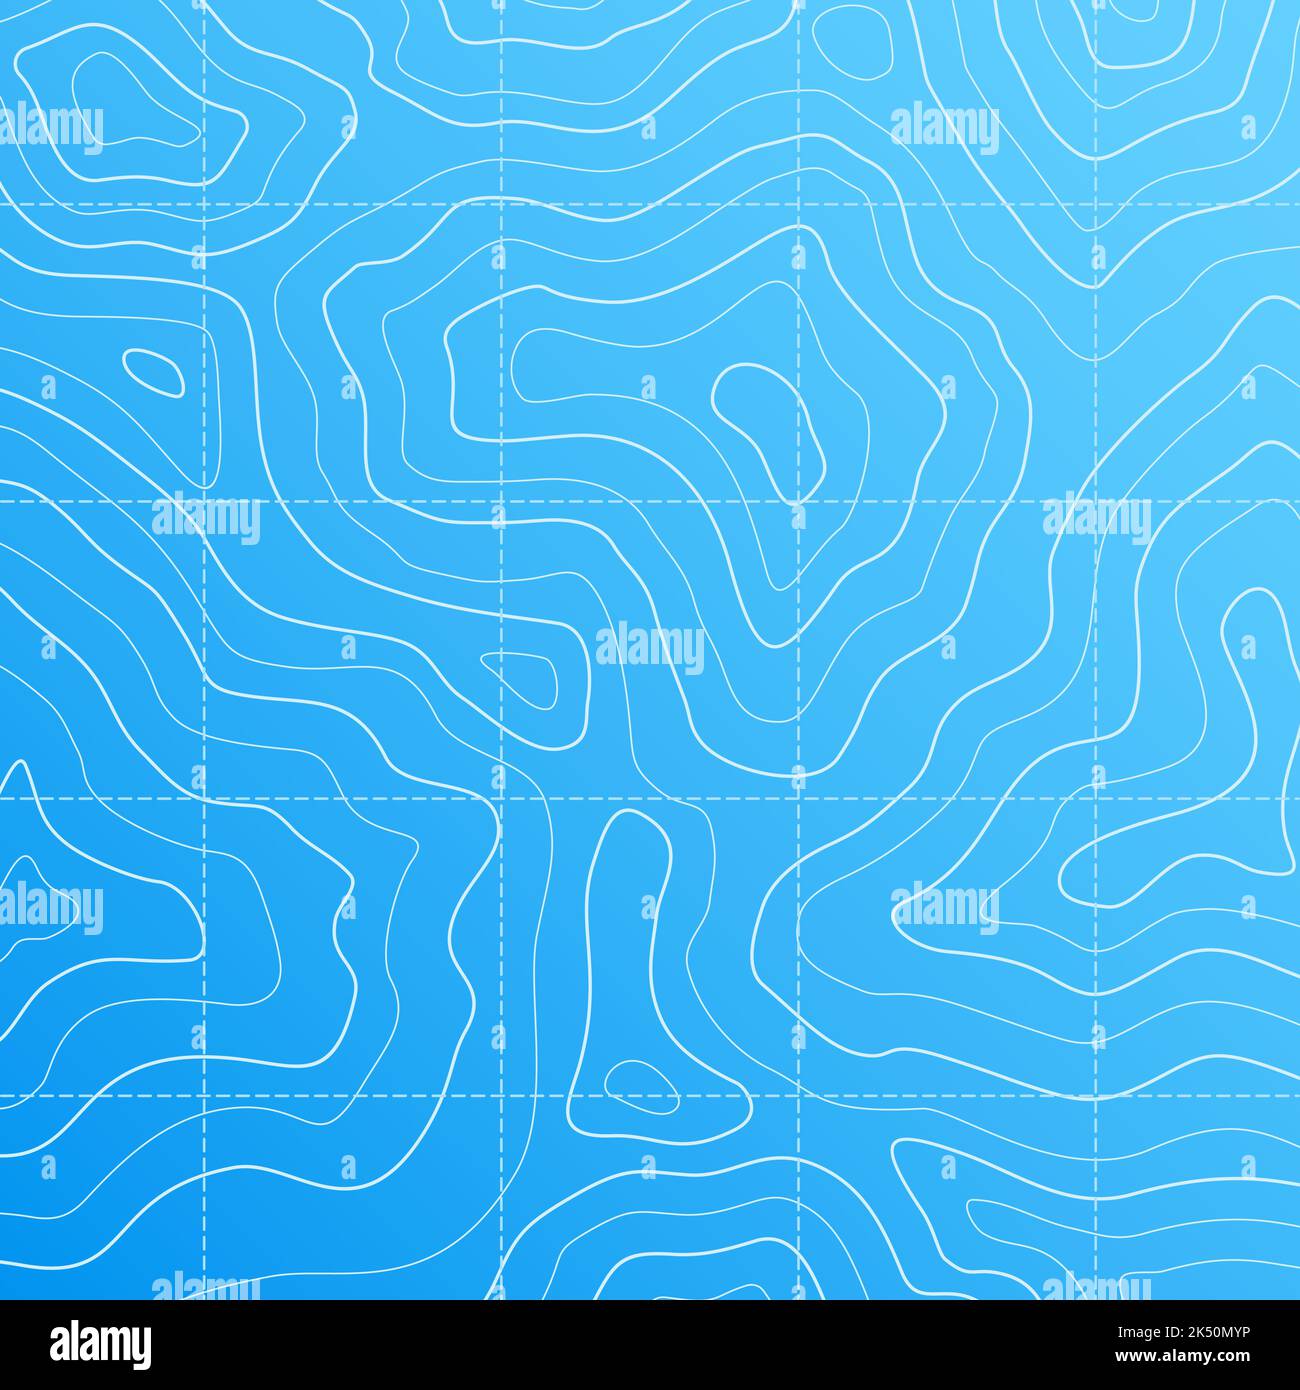 Carte topographique de la mer à contour linéaire sur fond bleu, topographie vectorielle de l'océan et du fond marin. Carte topographique abstraite avec paysage de relief inférieur, tracé de ligne de contour de profondeur et parcours de cours d'eau Illustration de Vecteur